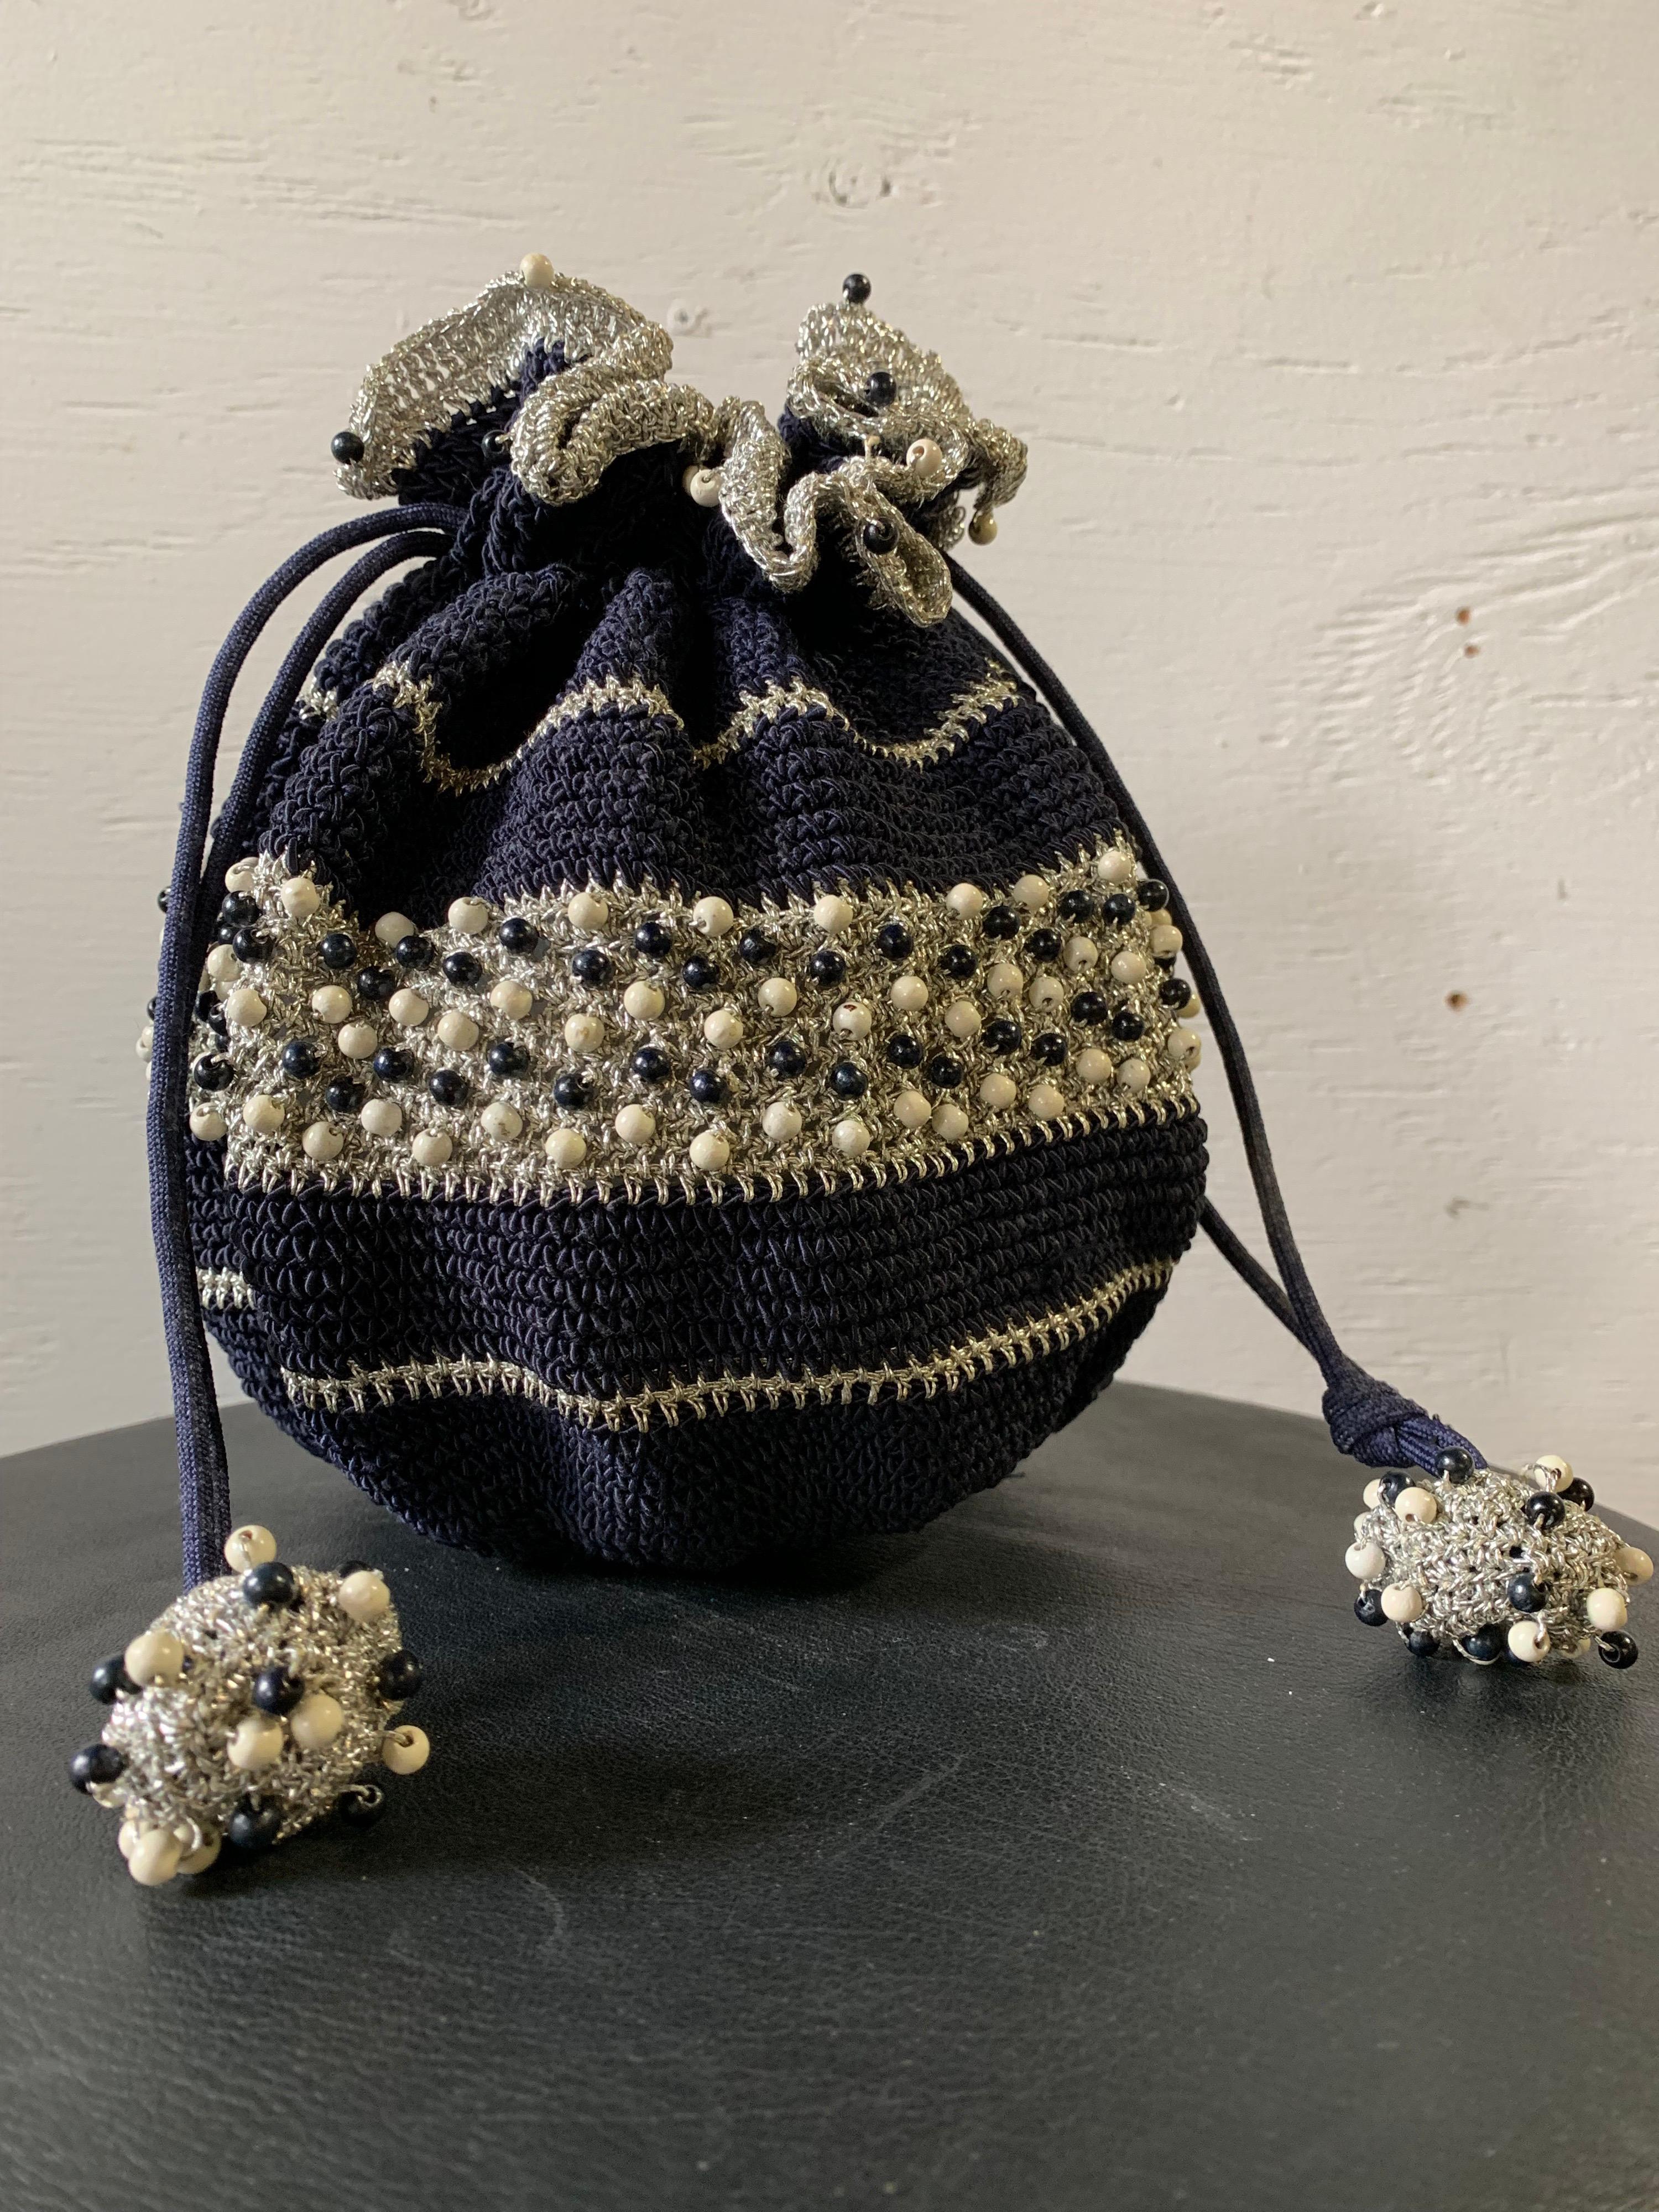 sac à main d'été à cordon en crochet des années 1950, de couleur marine et argentée, avec perles en bois. Fond en résine et boutons en forme de boule aux extrémités du cordon.